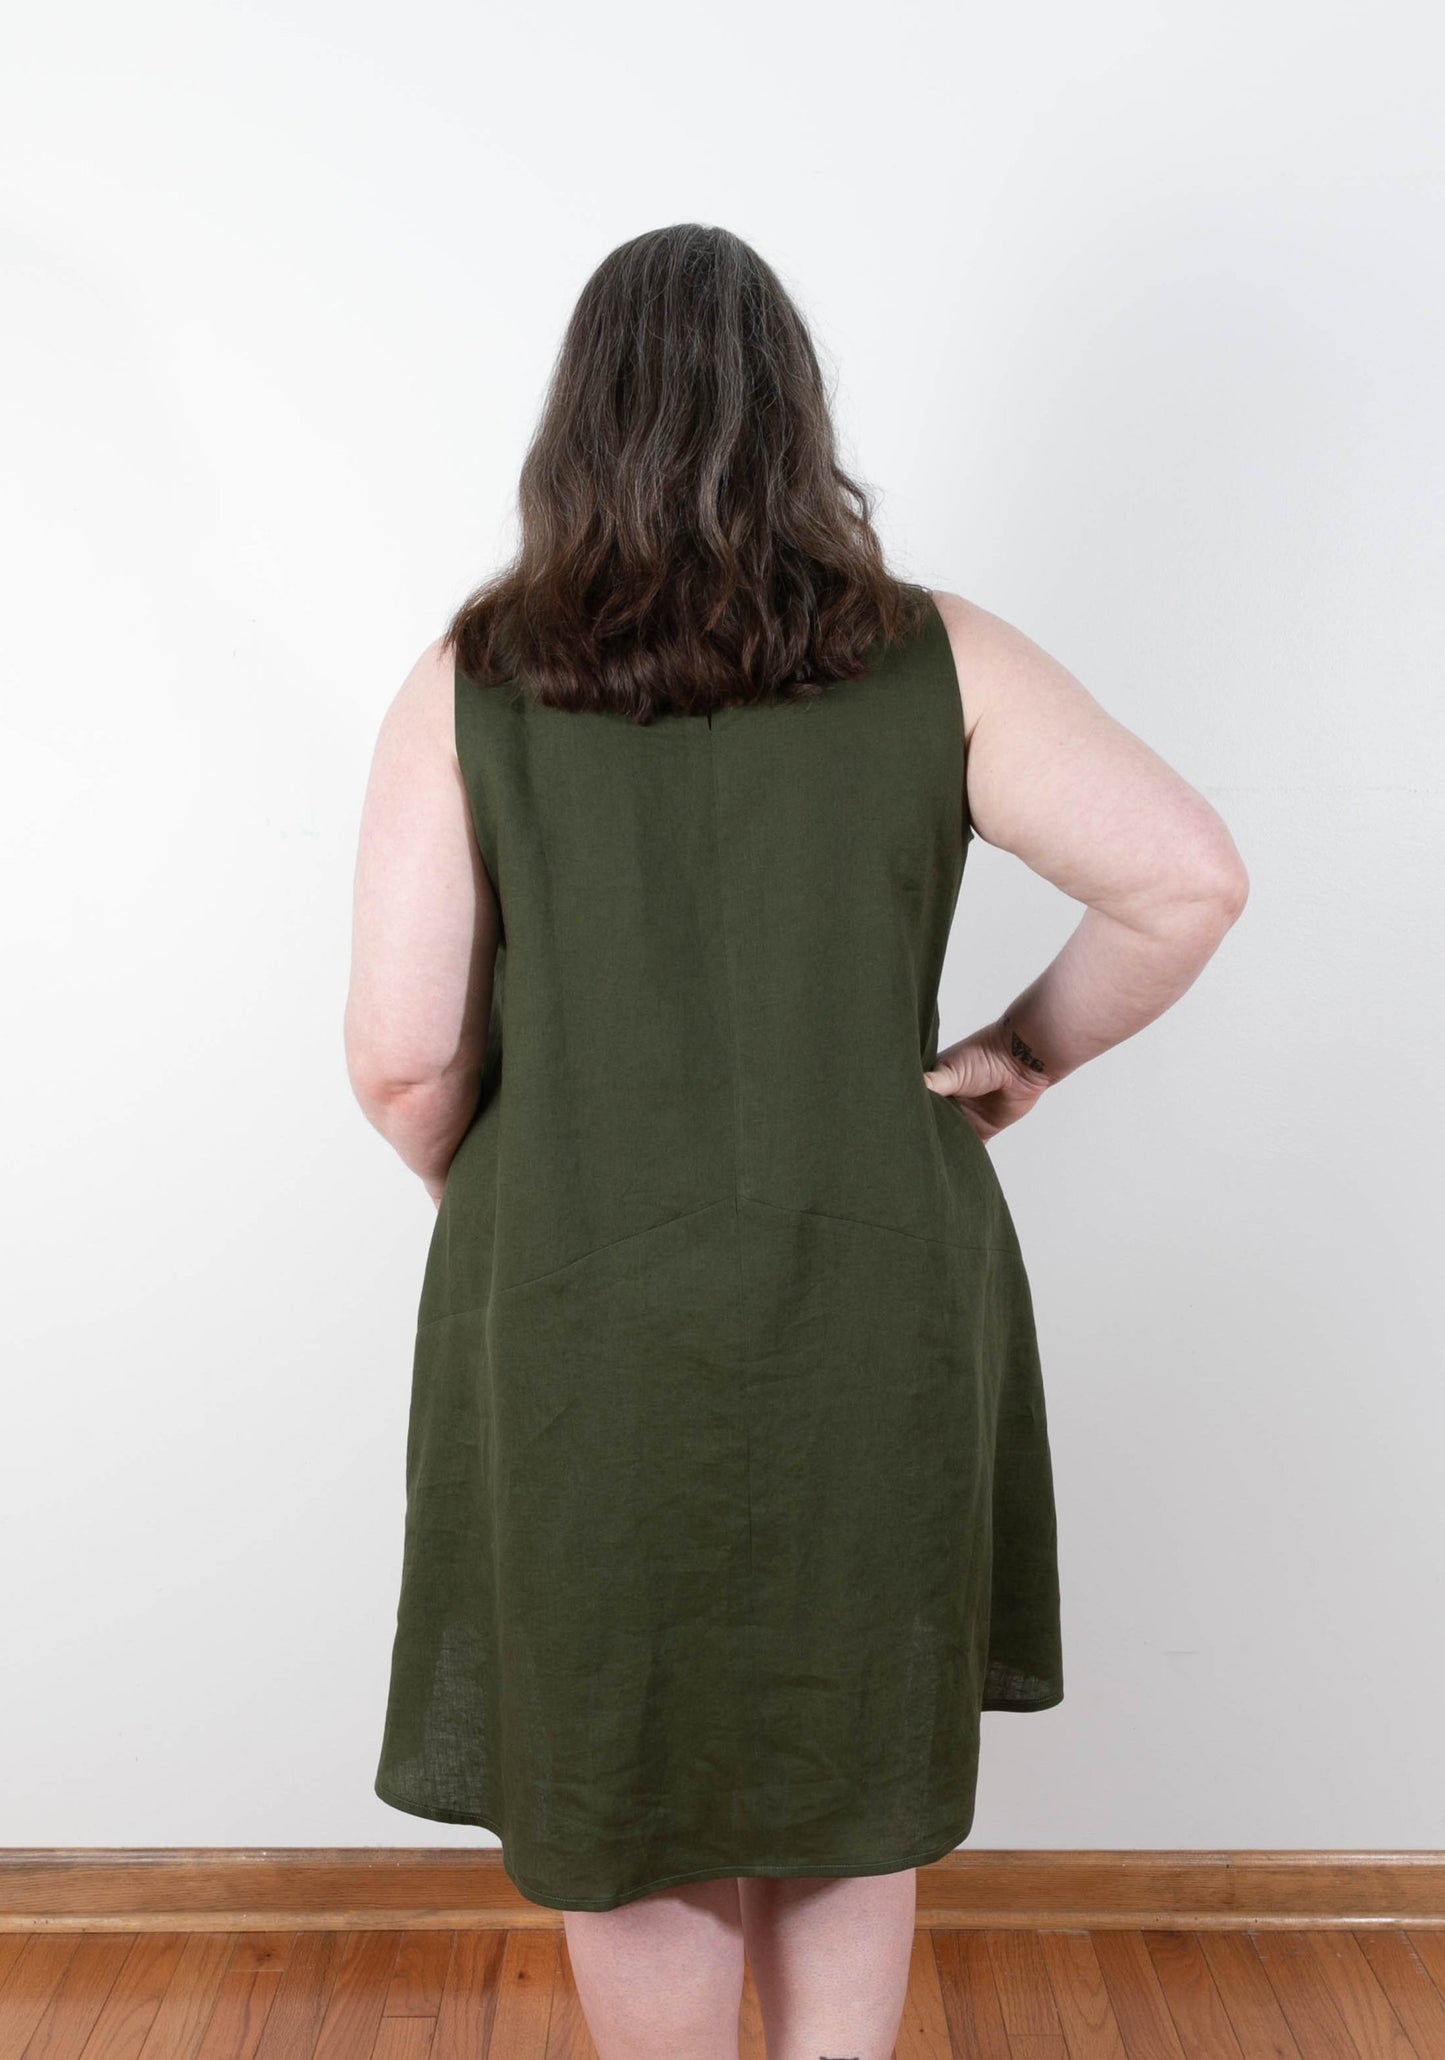 Farrow Dress sewing pattern by Grainline Studio